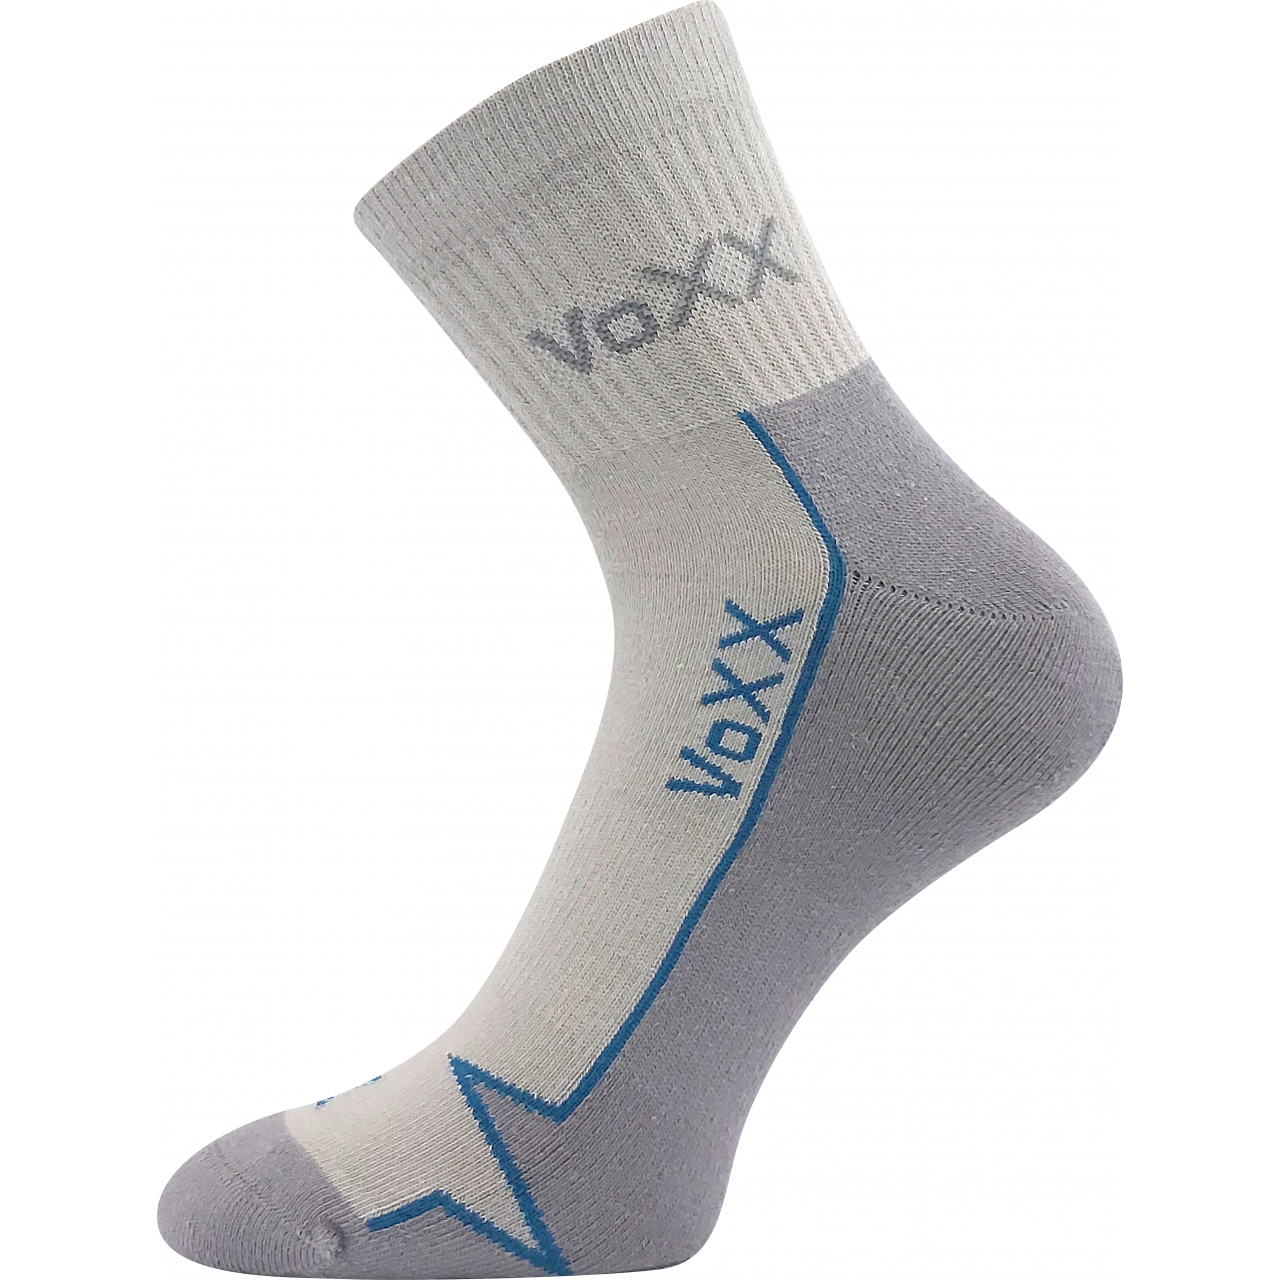 Ponožky sportovní Voxx Locator B - světle šedé, 43-46